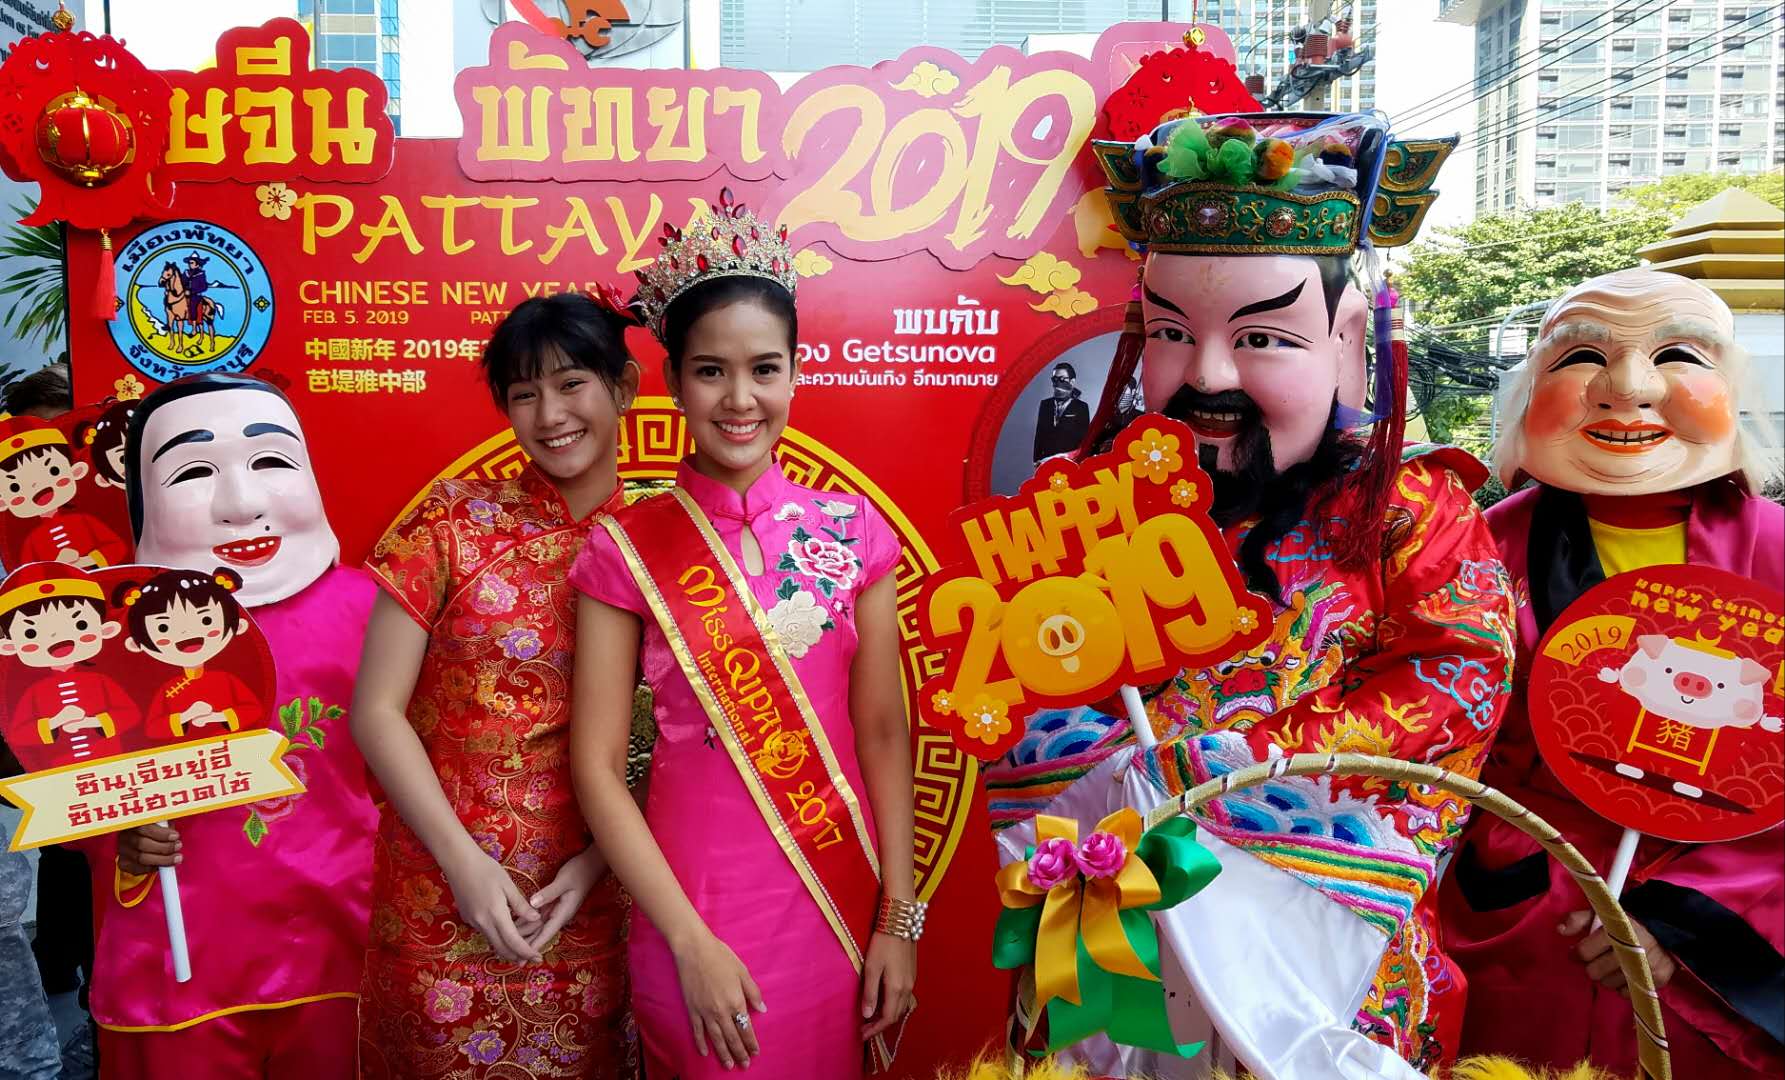 喜迎金猪年，泰旅局邀您来泰国度一个欢乐春节！ - 泰国头条新闻